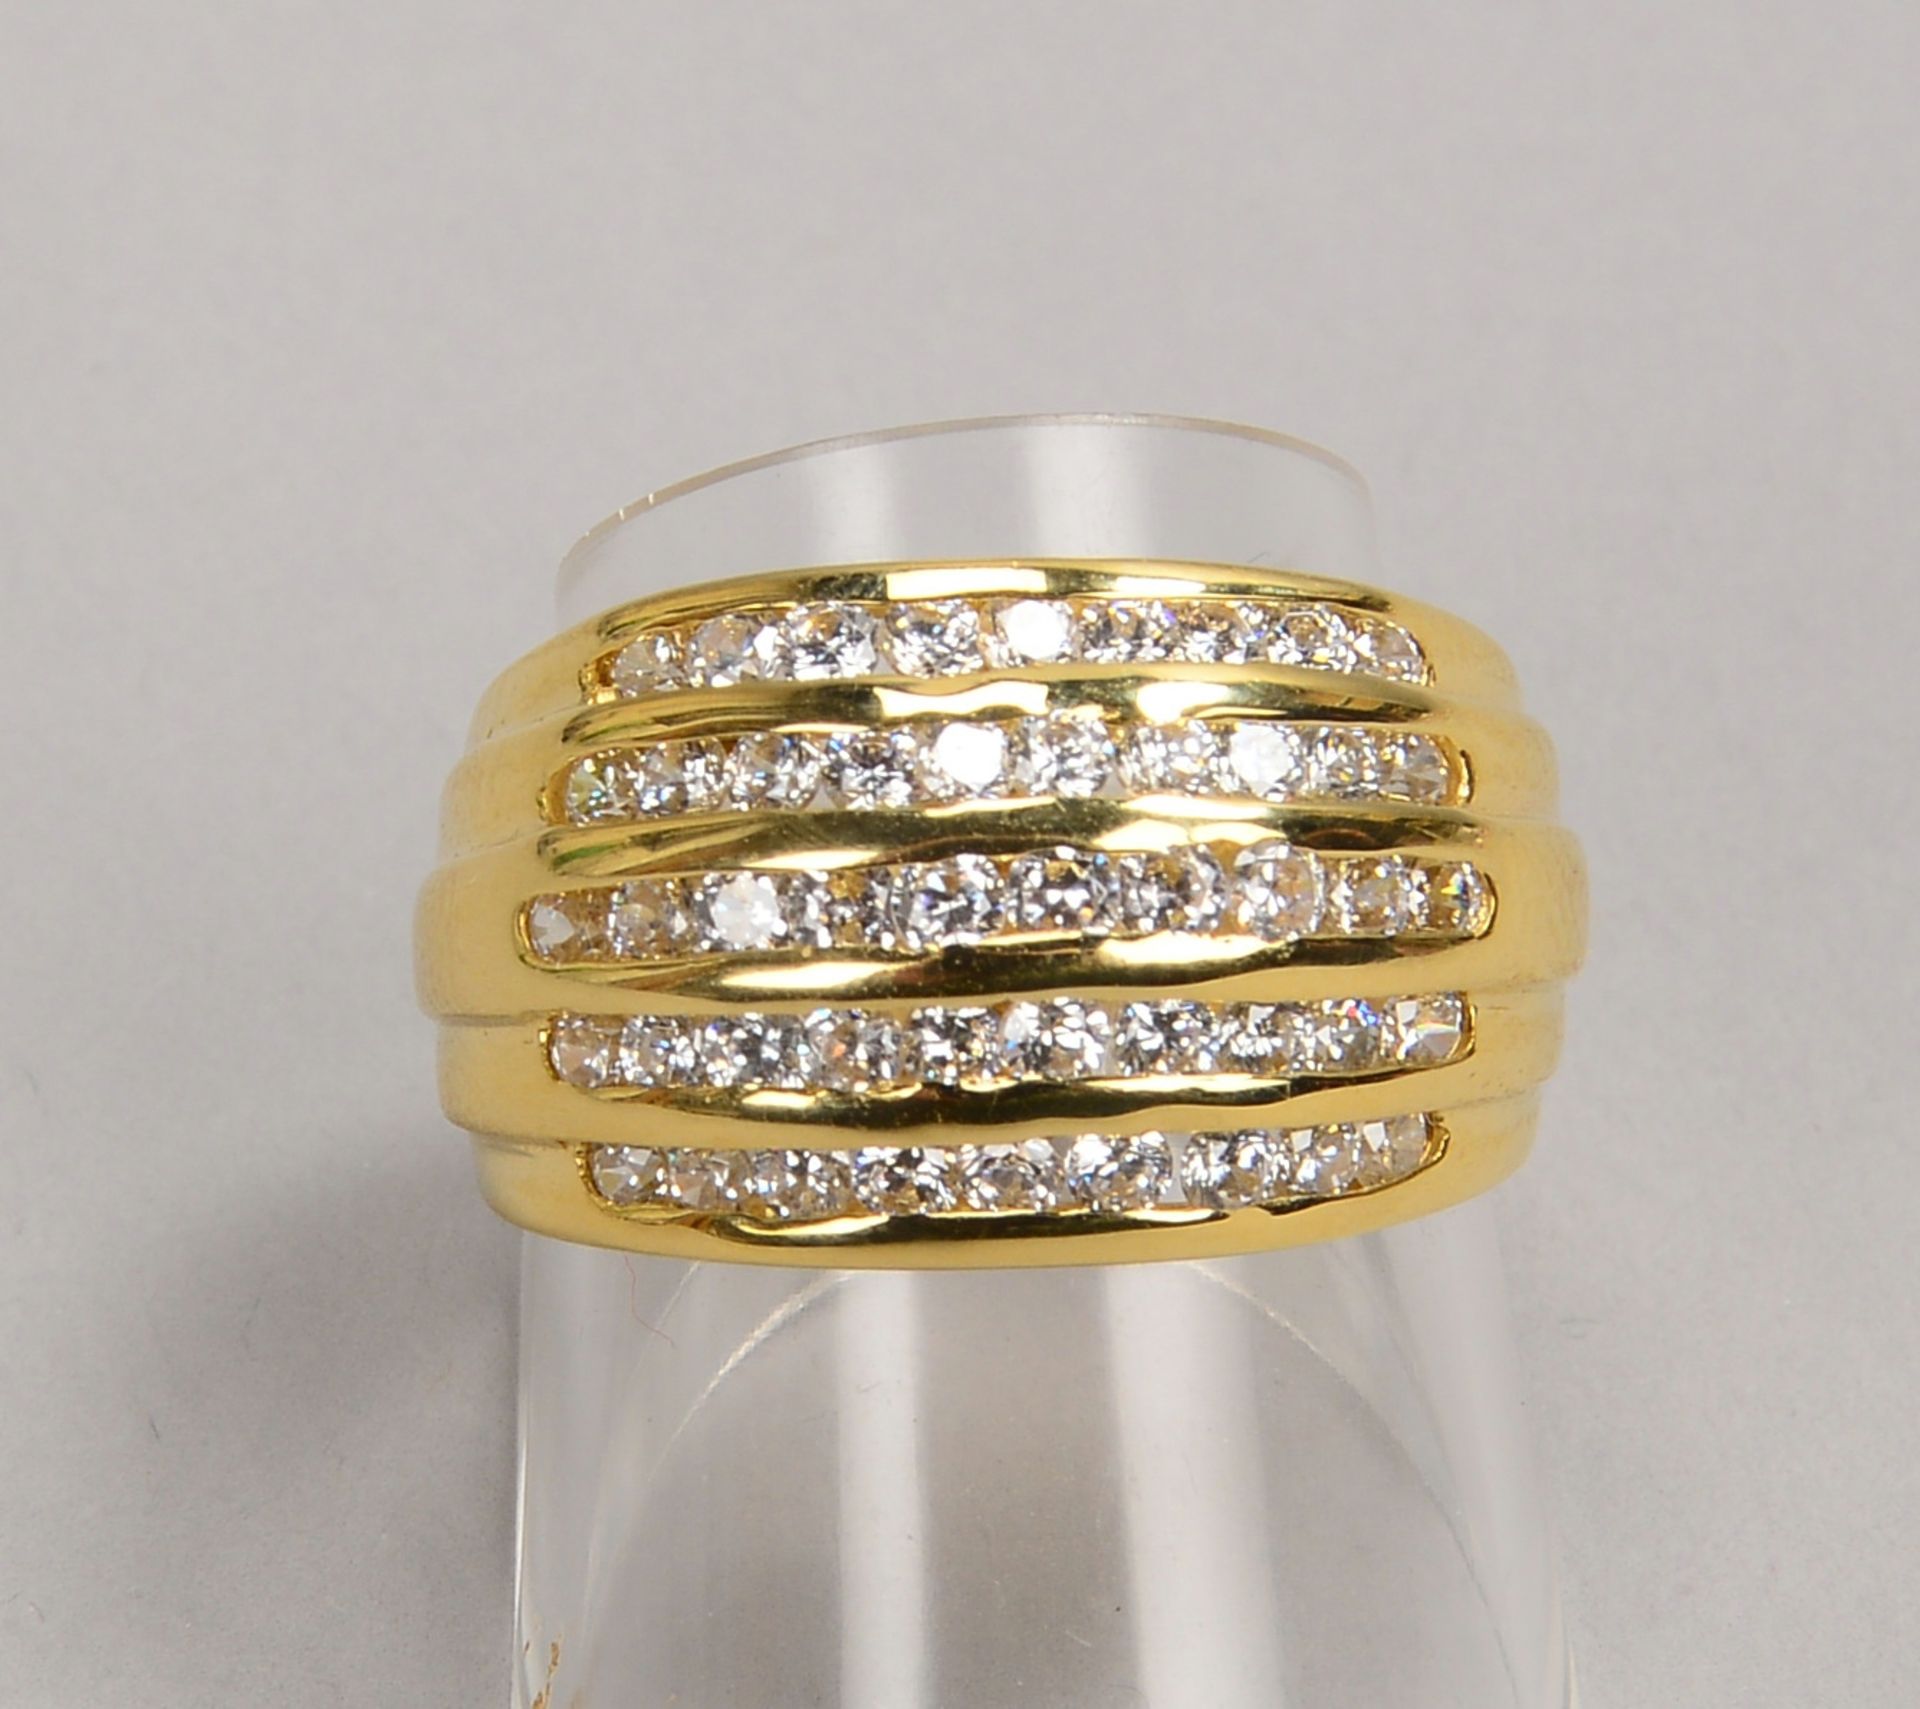 Ring, 750 GG (gest.), besetzt mit 48x kl. Brill./zus. ca. 1,0 ct; RG 57, Gew. 8,50 g - Bild 2 aus 2